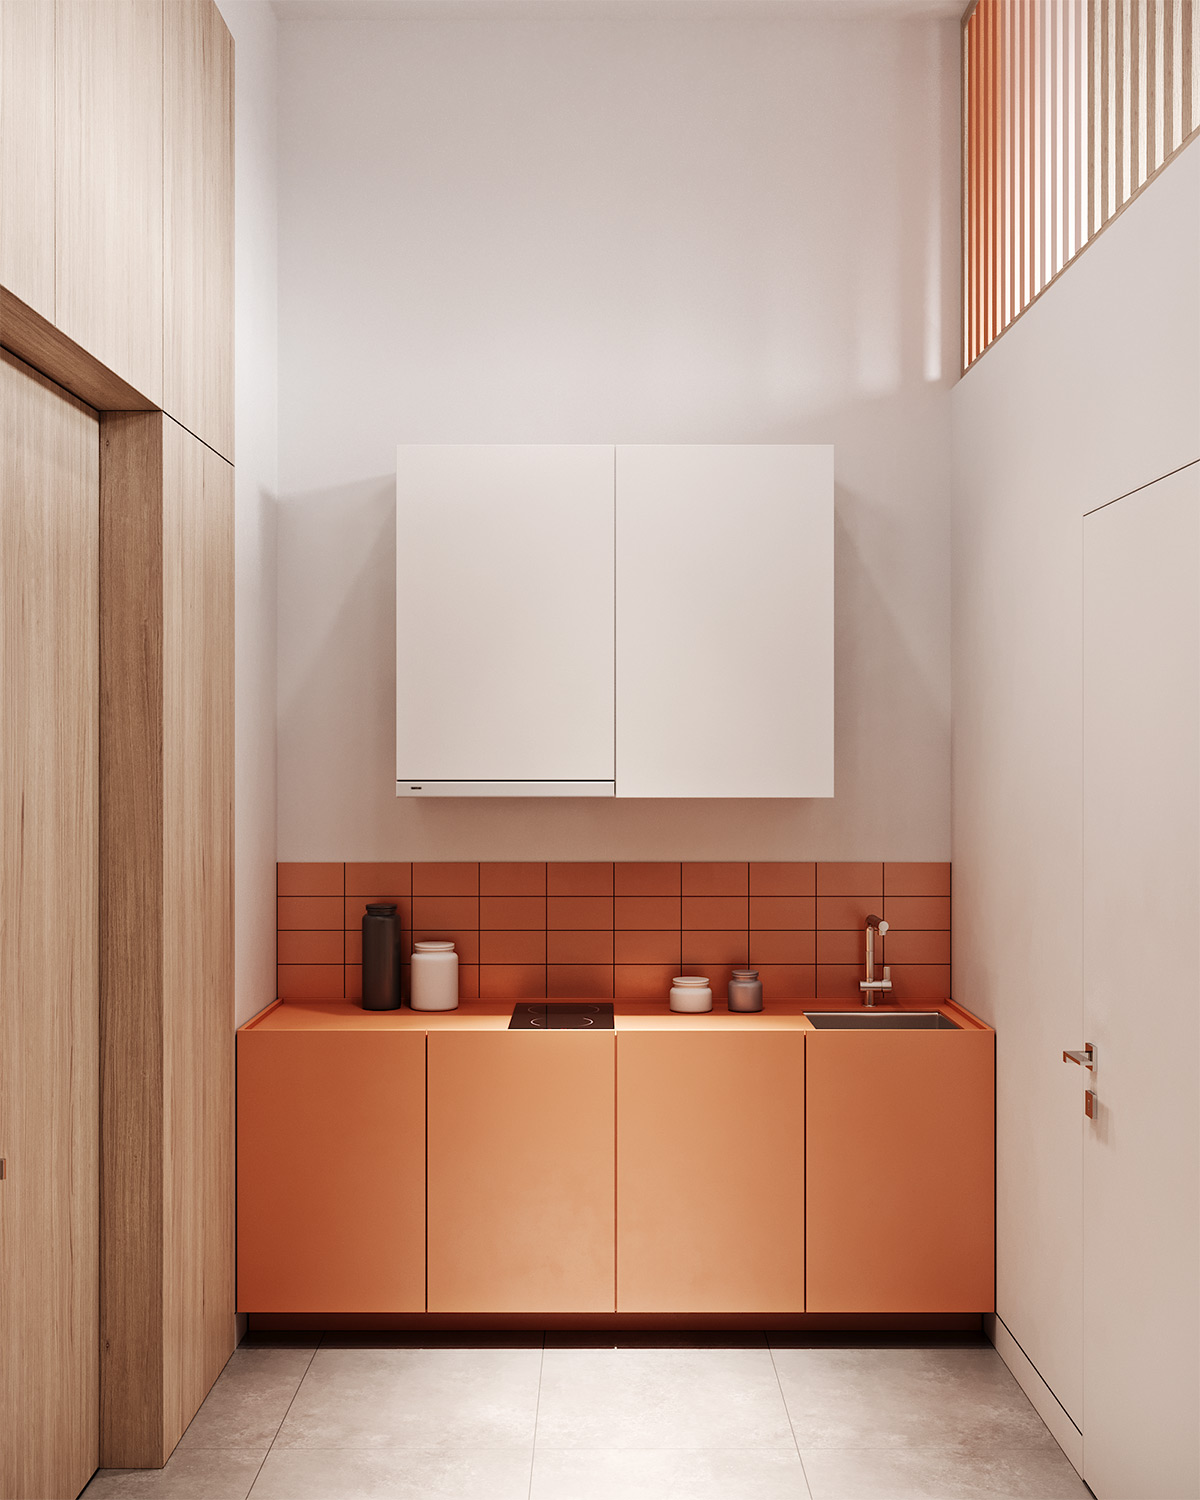 40个橙色厨房设计案例